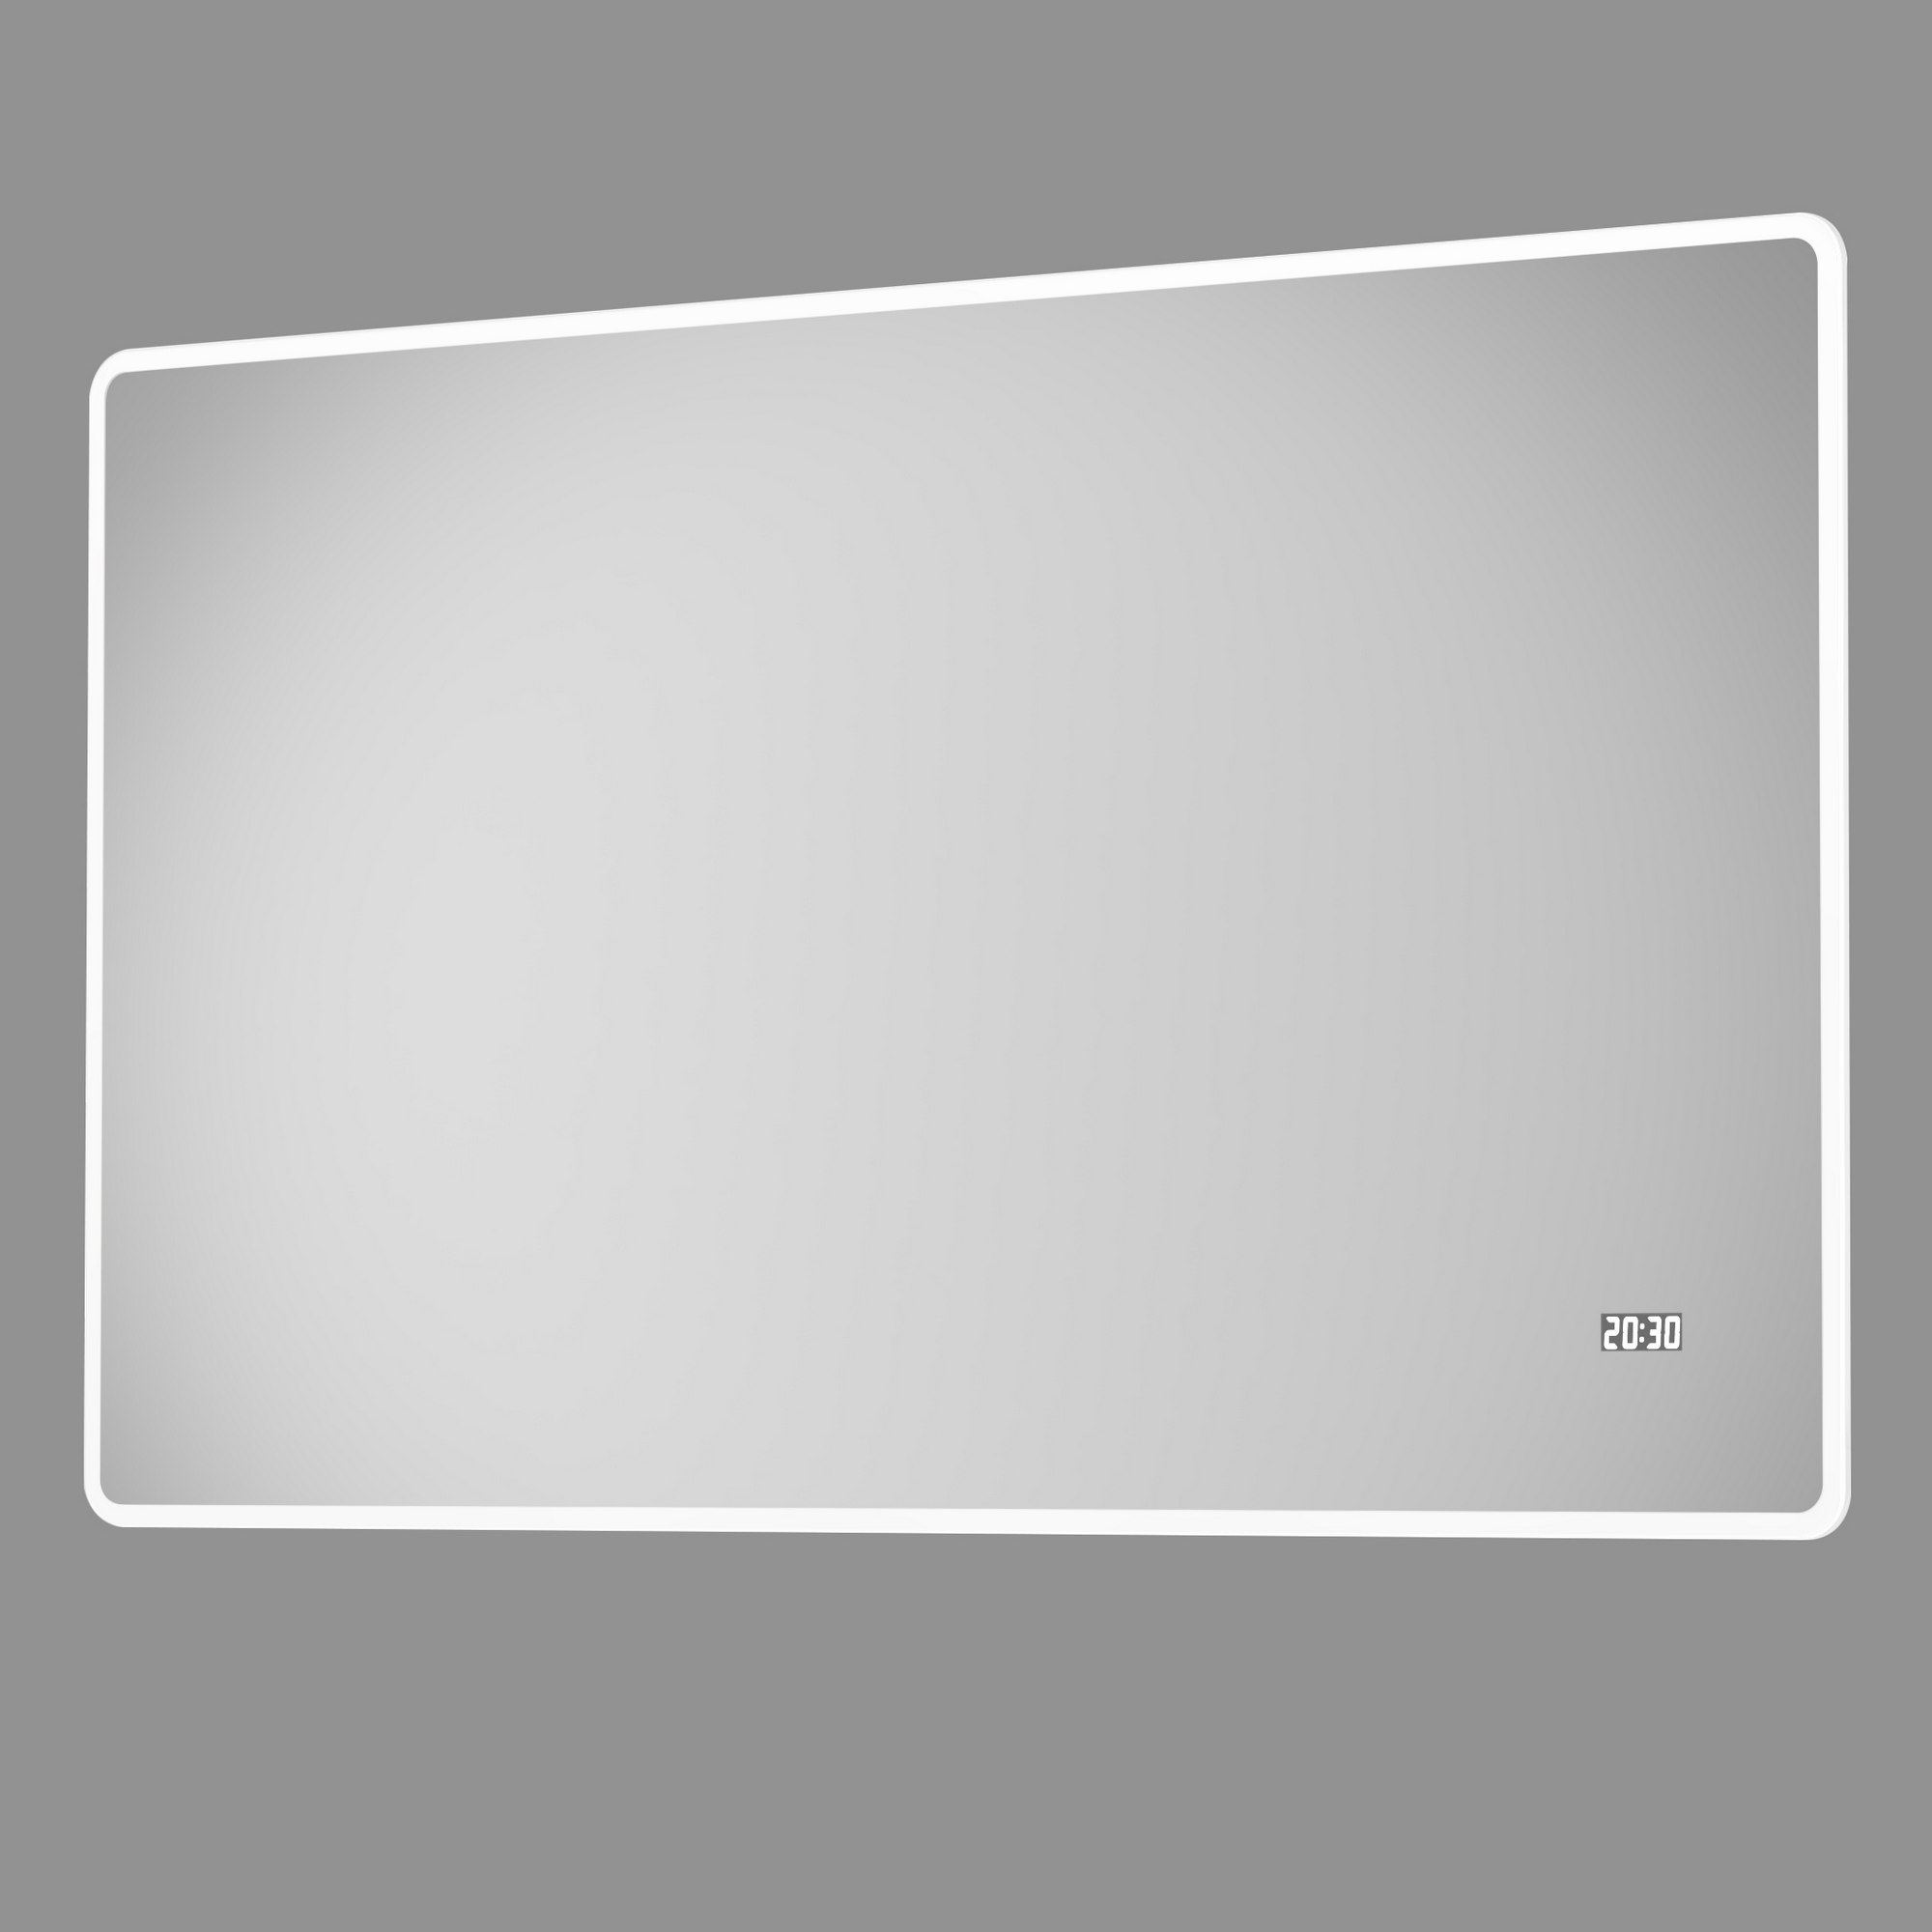 LED-Spiegel 'Silver Sunshine 2.0' mit Uhr 120 x 70 cm + product picture